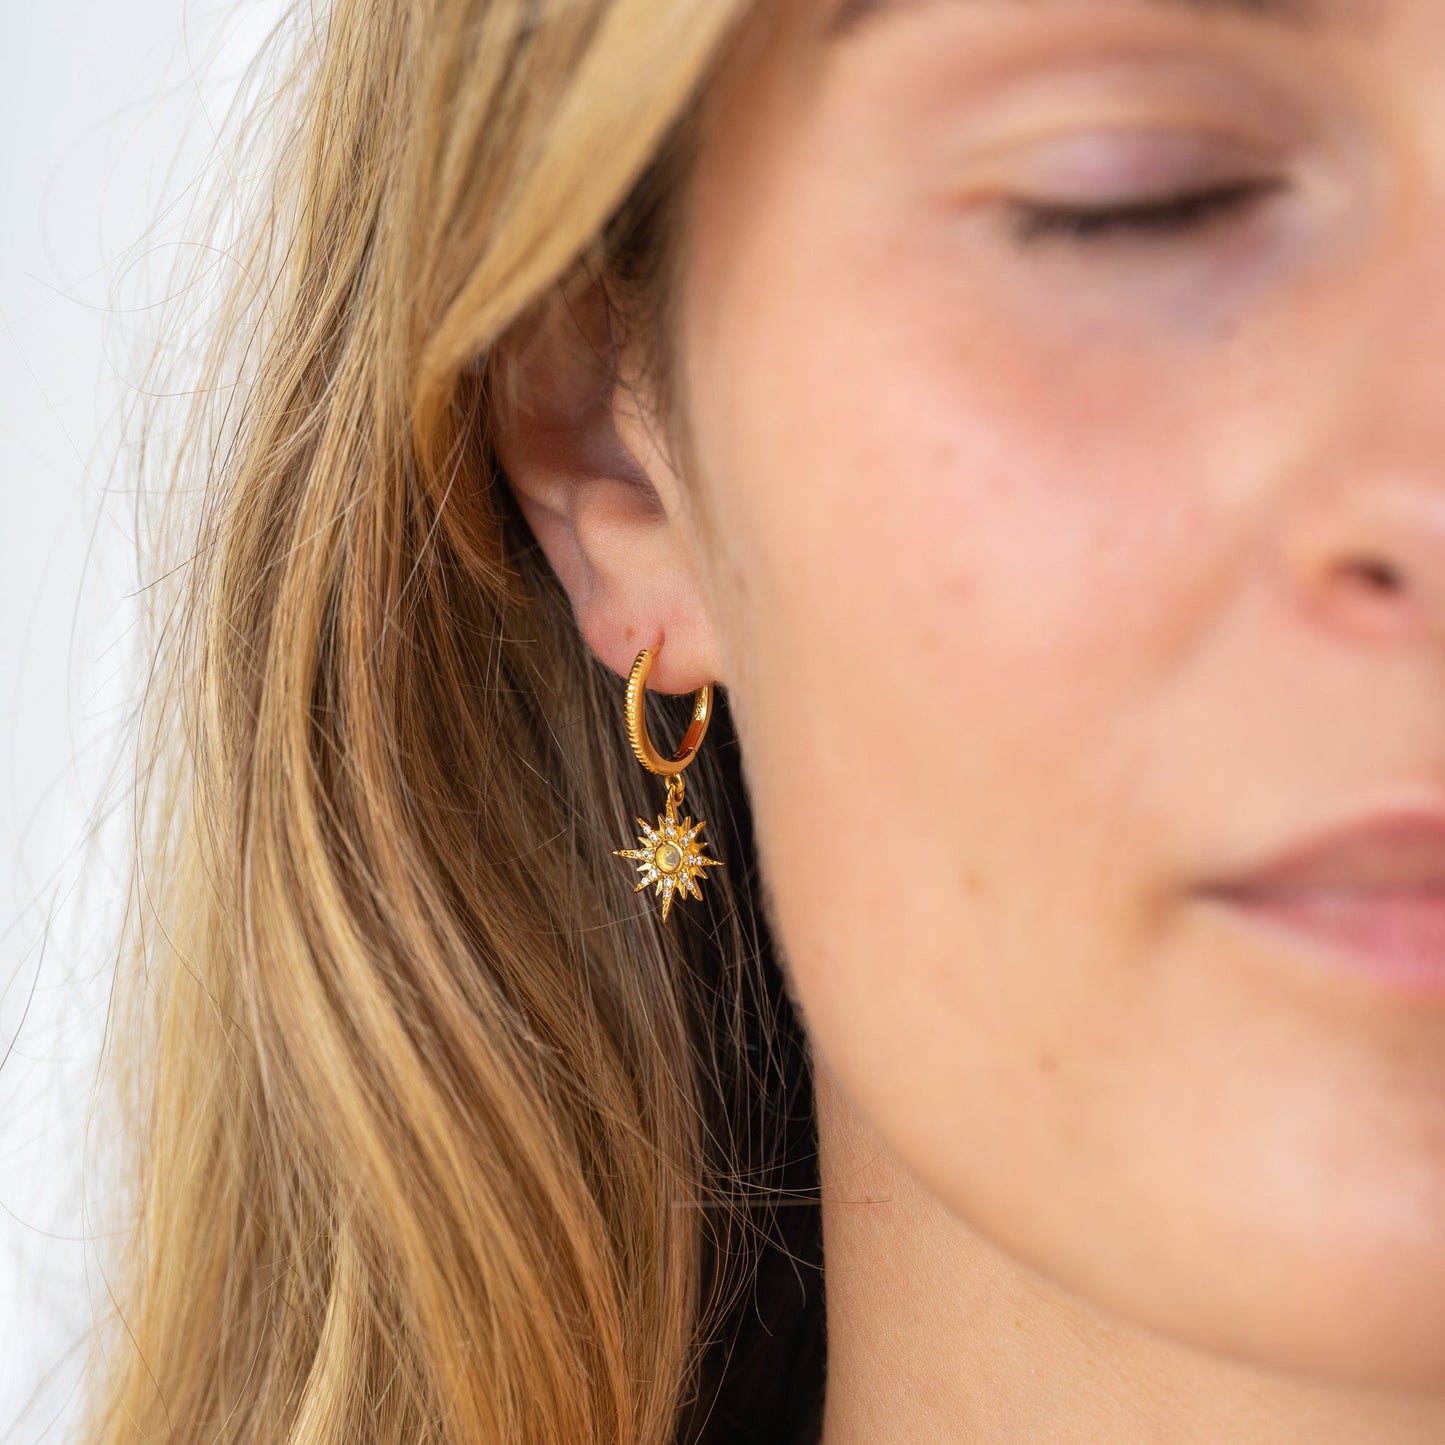 Starburst Gold Opal Earrings - Sterling Silver